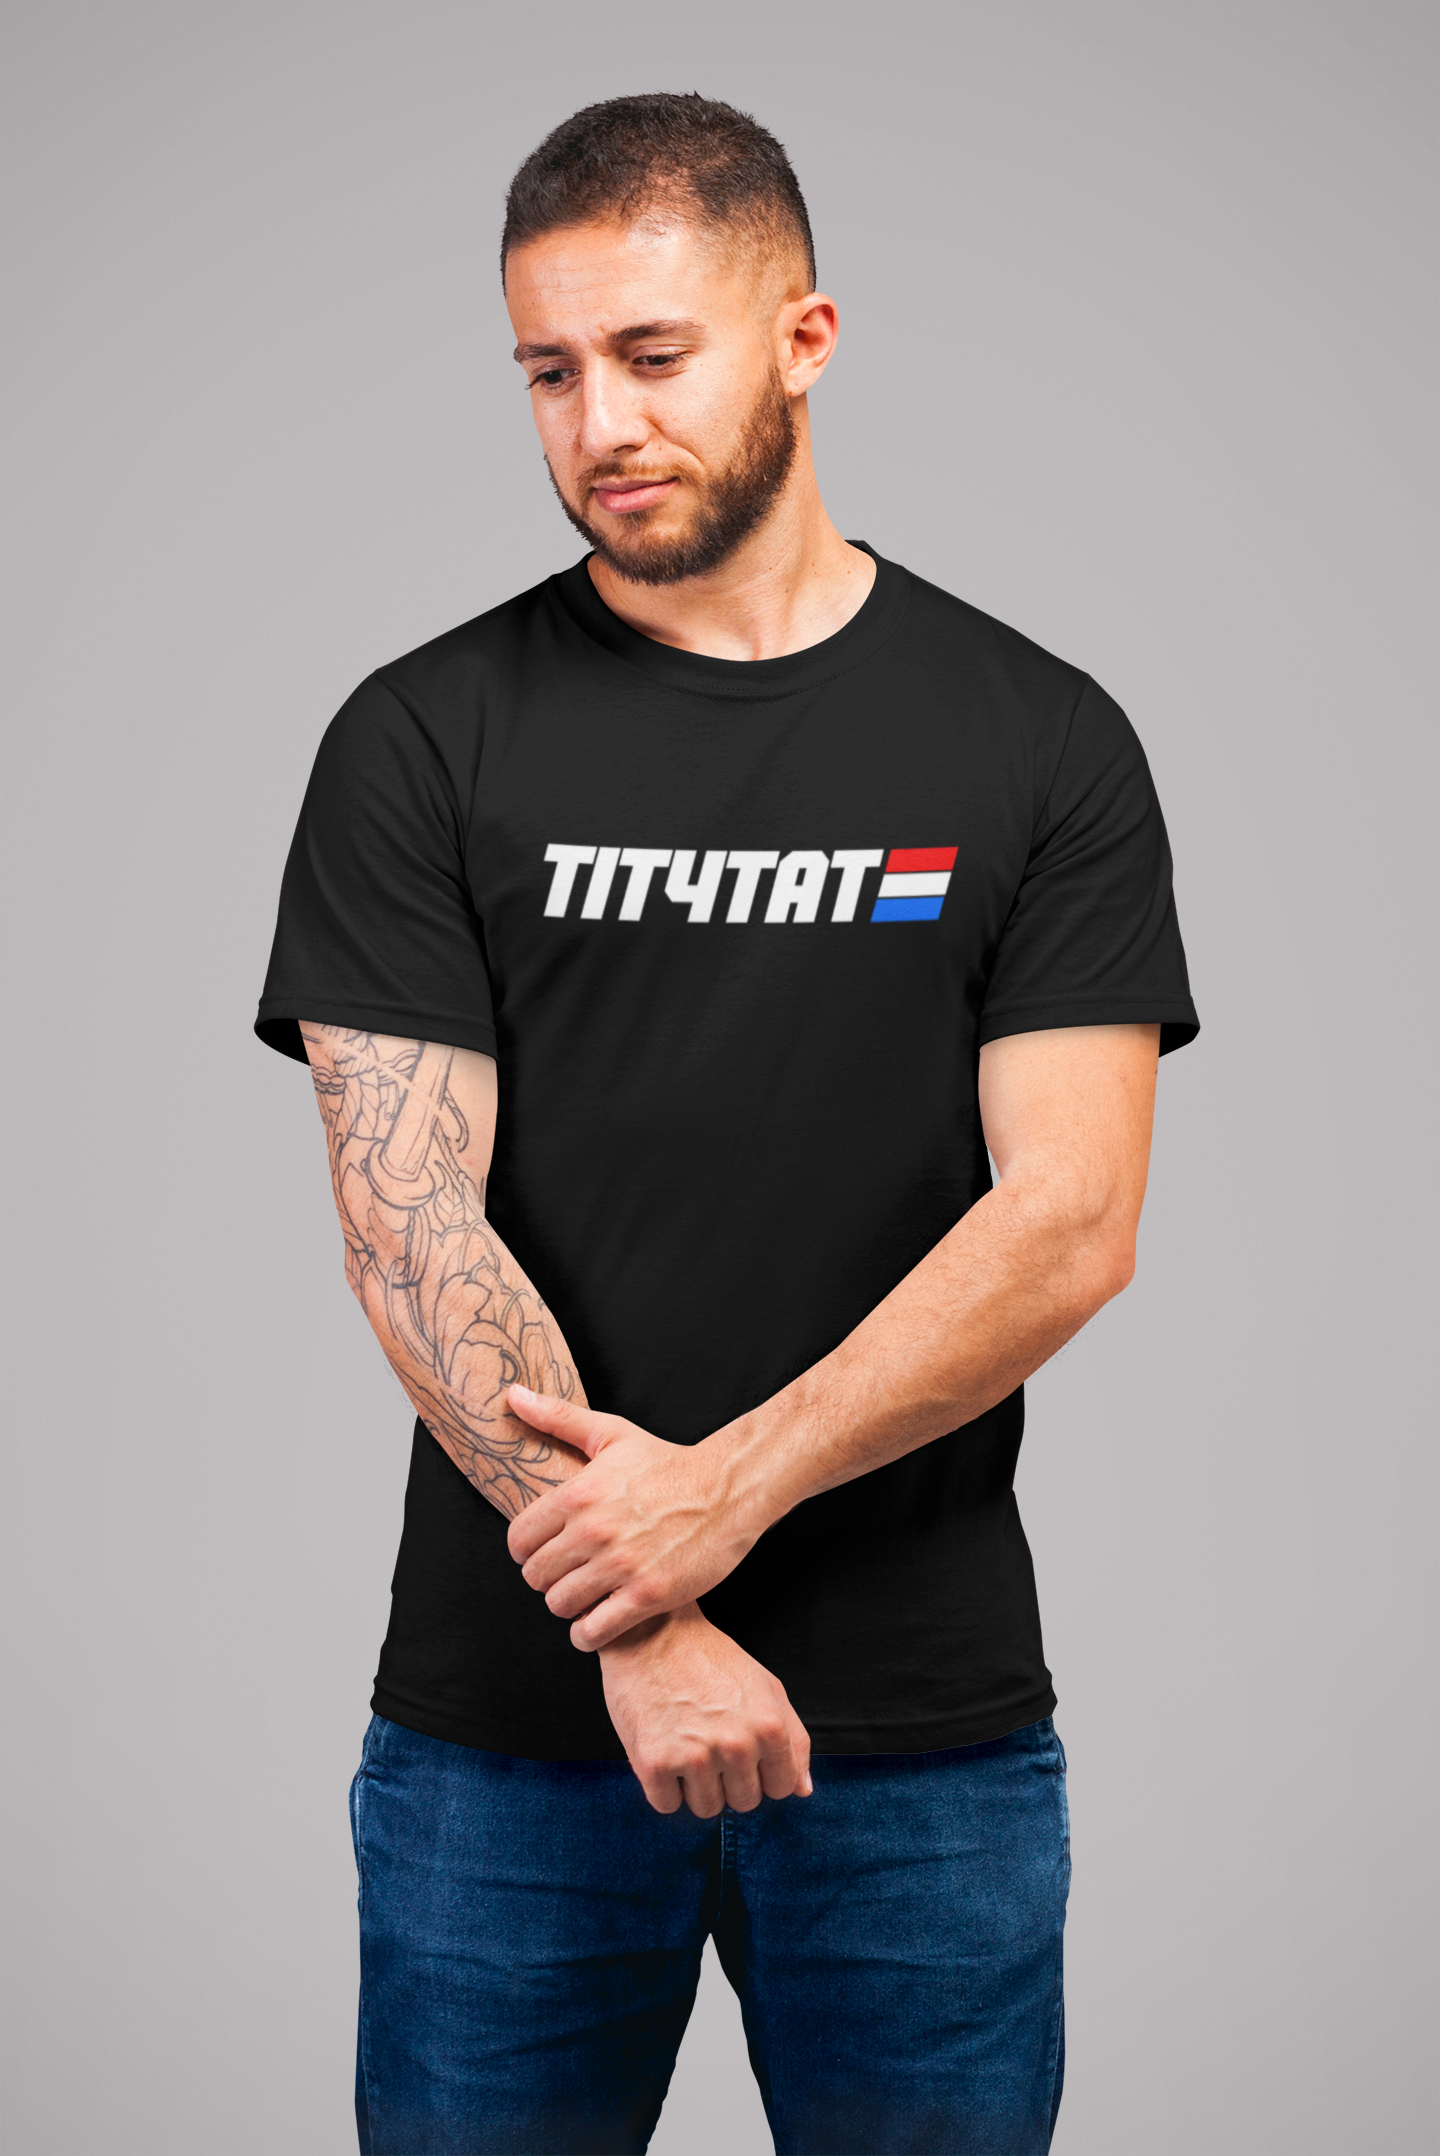 Tit4Tat - "Battlefield Blazers" Short Sleeve T-shirt